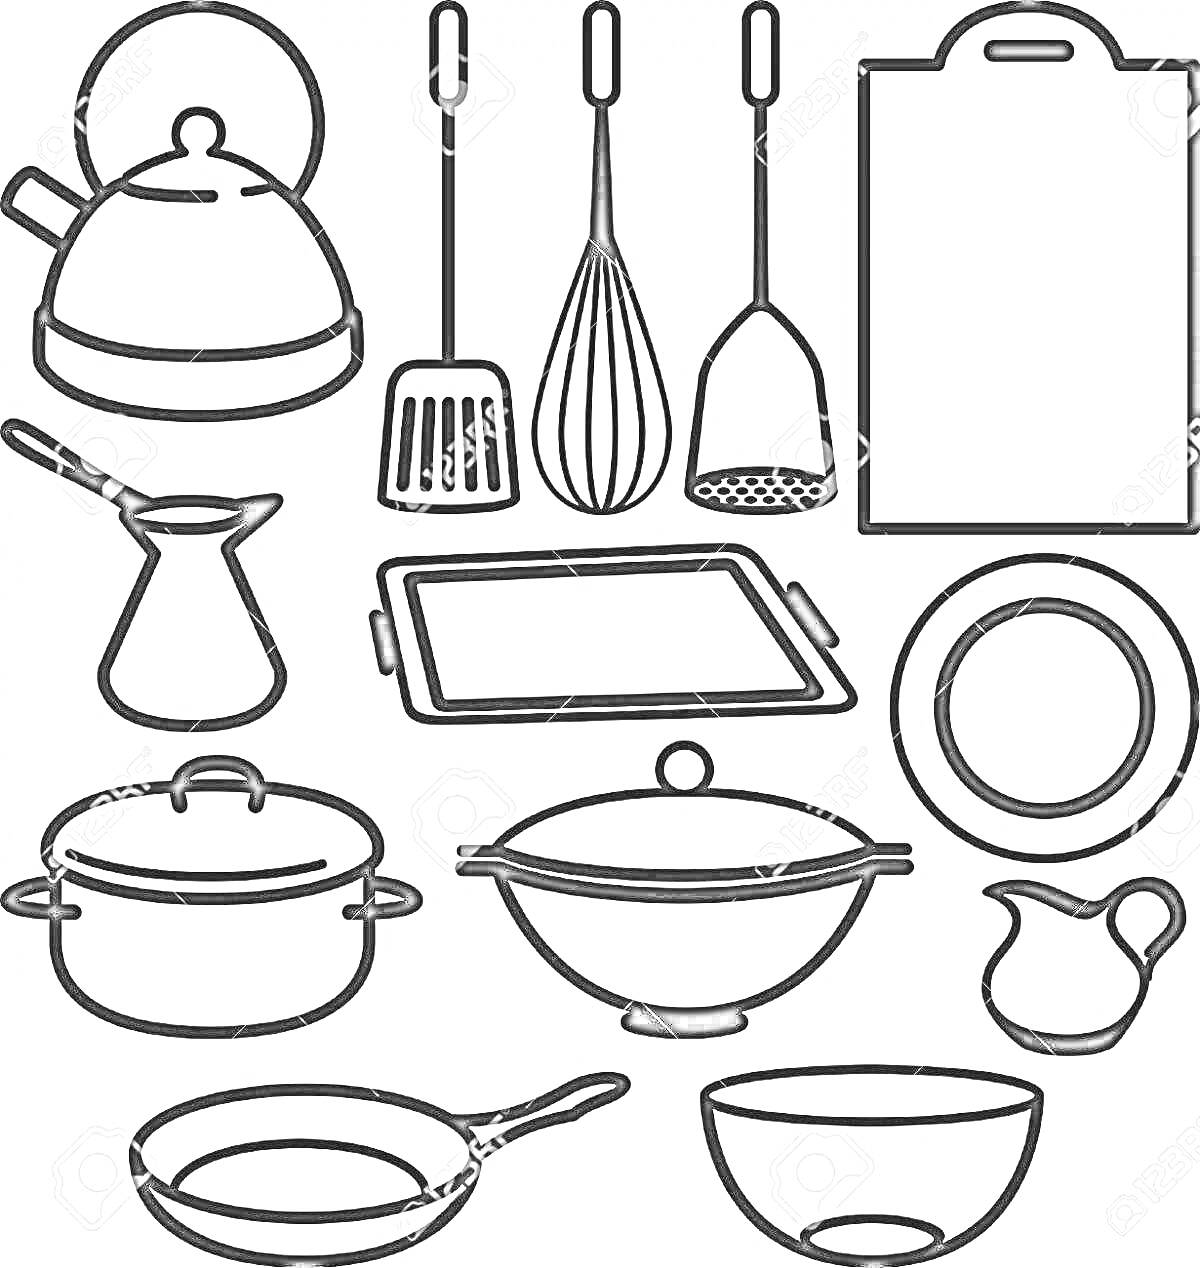 Раскраска Набор кухонных инструментов и посуды - чайник, лопатка, венчик, шумовка, разделочная доска, турка, противень, тарелка, кастрюля, салатник, сковорода, миска, соусник